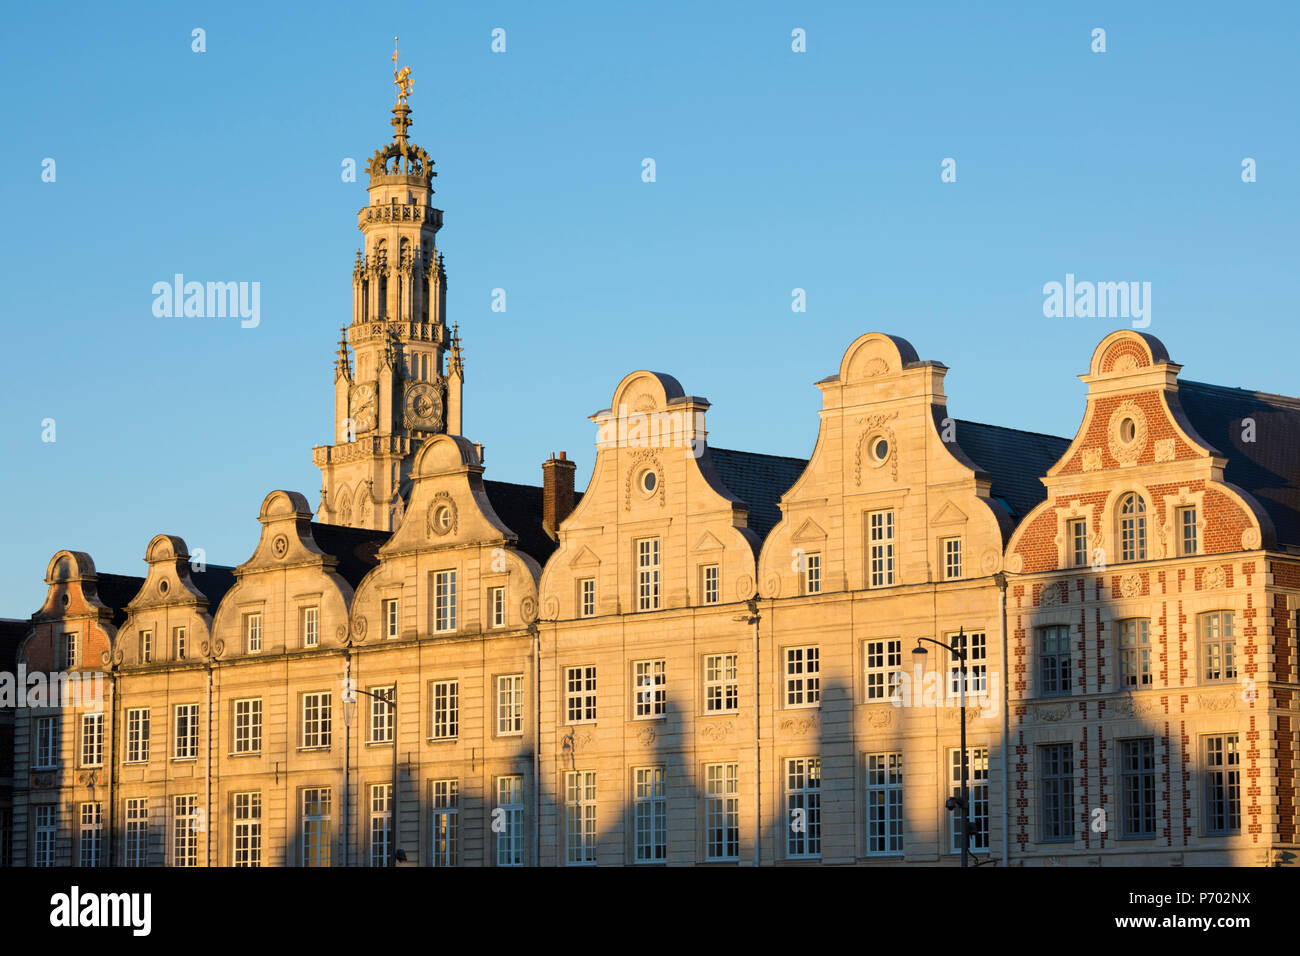 Flemish style facades on Grand Place, Arras, Pas-de-Calais, Hauts-de-France region, France, Europe Stock Photo